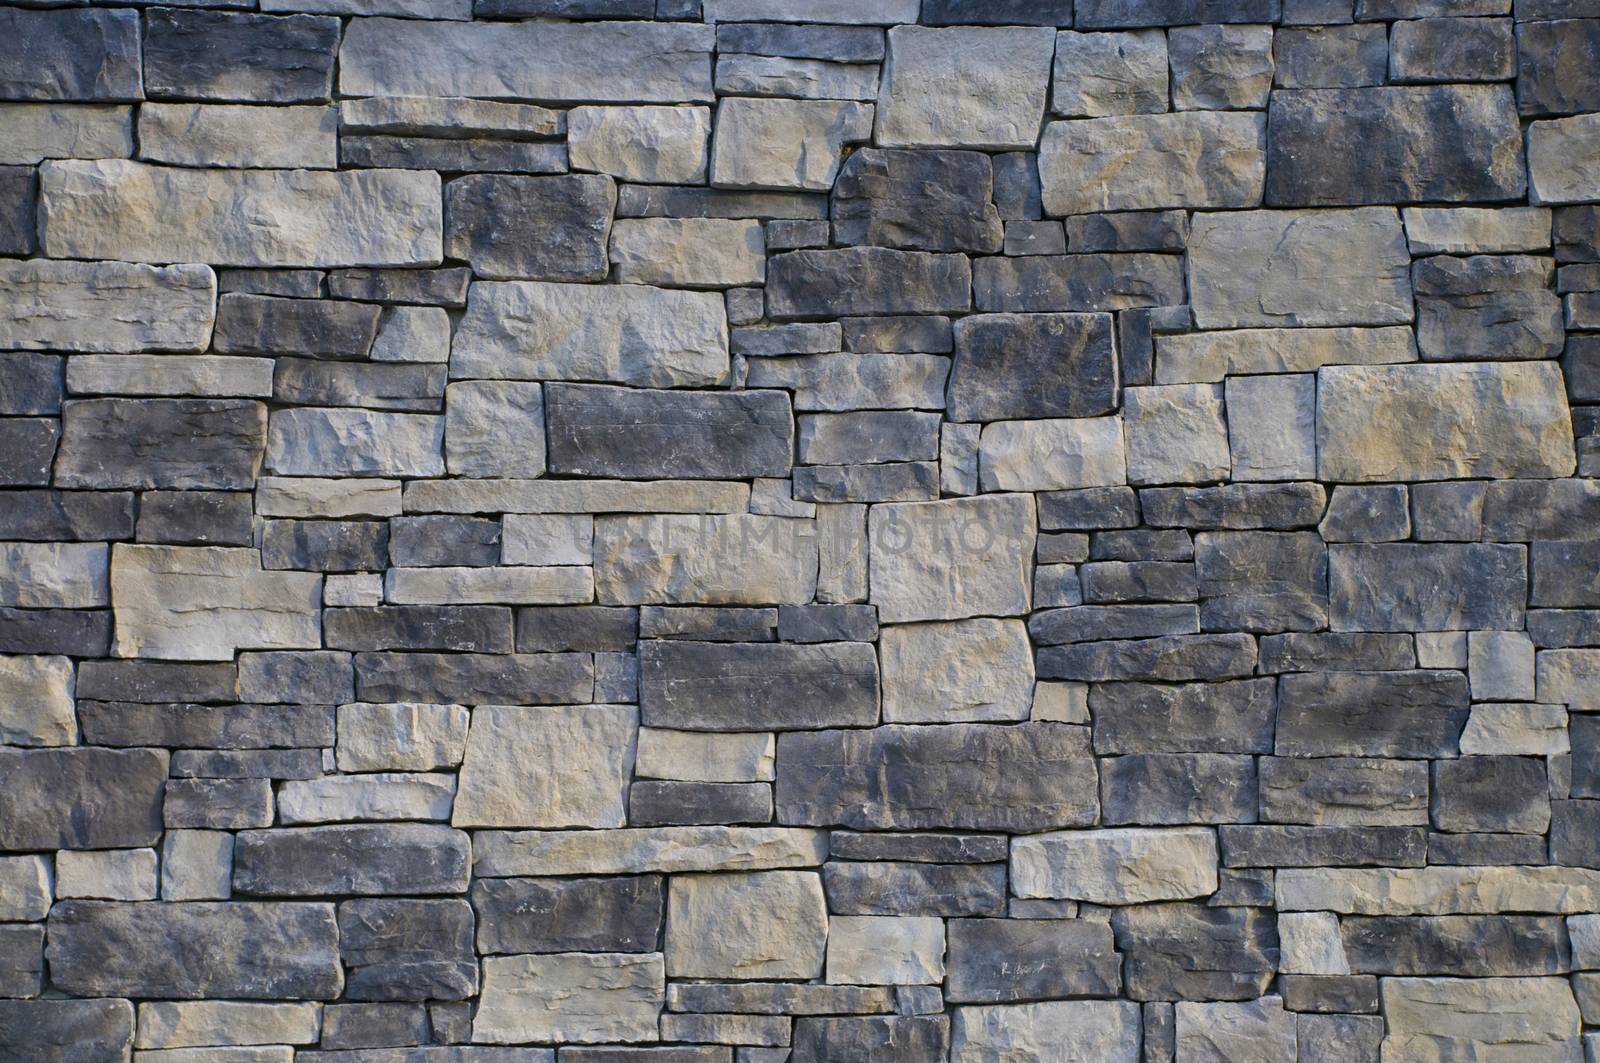 Monochromatic masonry wall by Balefire9